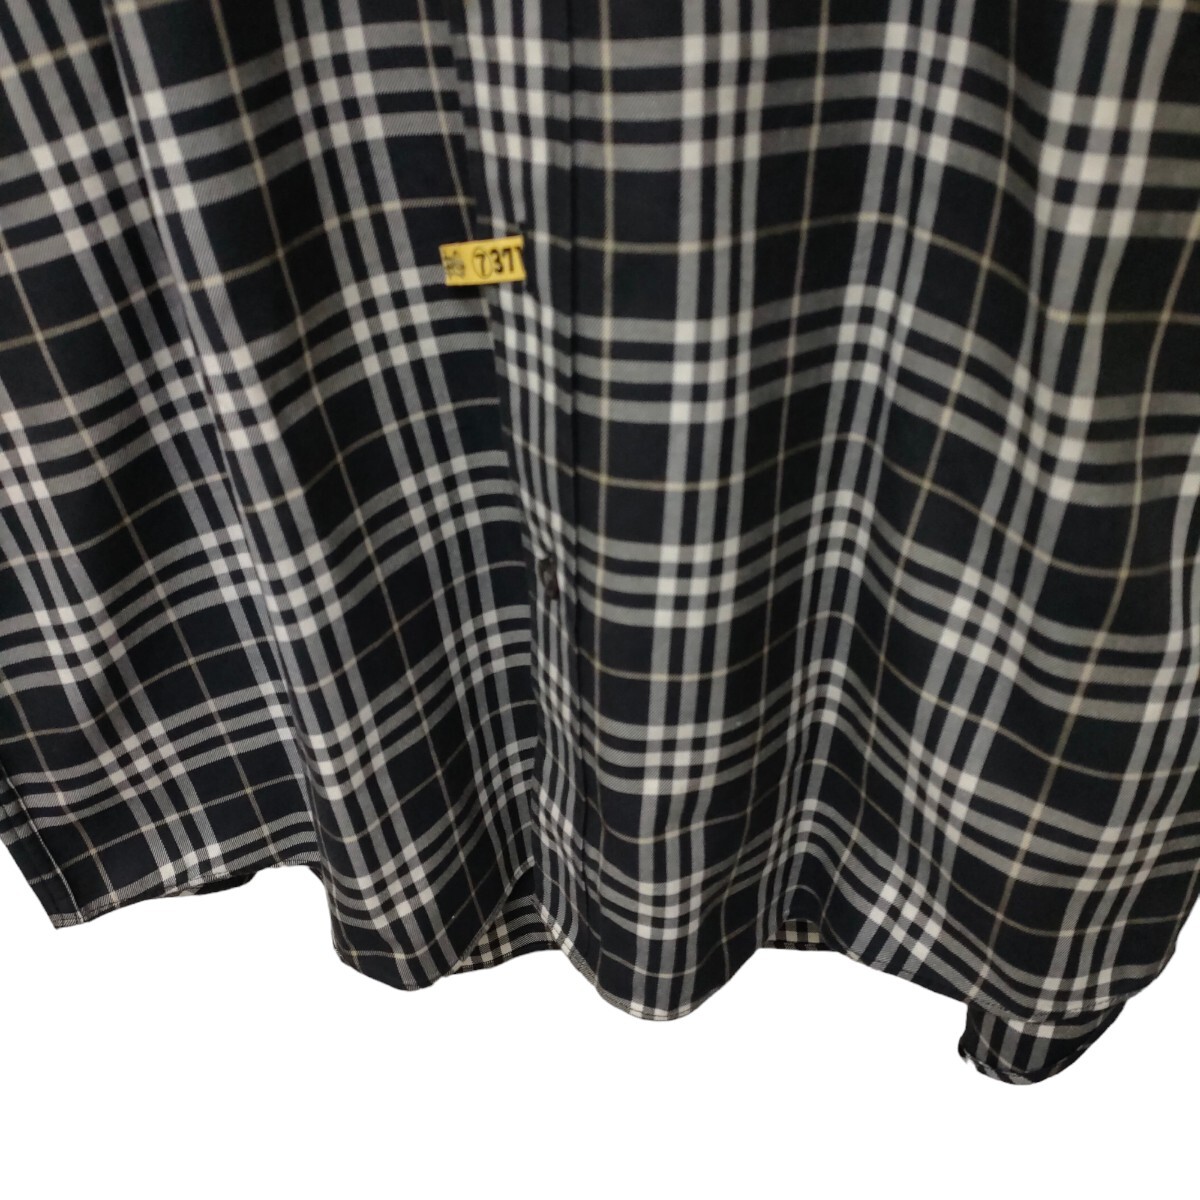 BURBERRY LONDON / Burberry мужской длинный рукав кнопка рубашка сорочка Monotone в клетку M размер сделано в Японии чистка settled I-3721